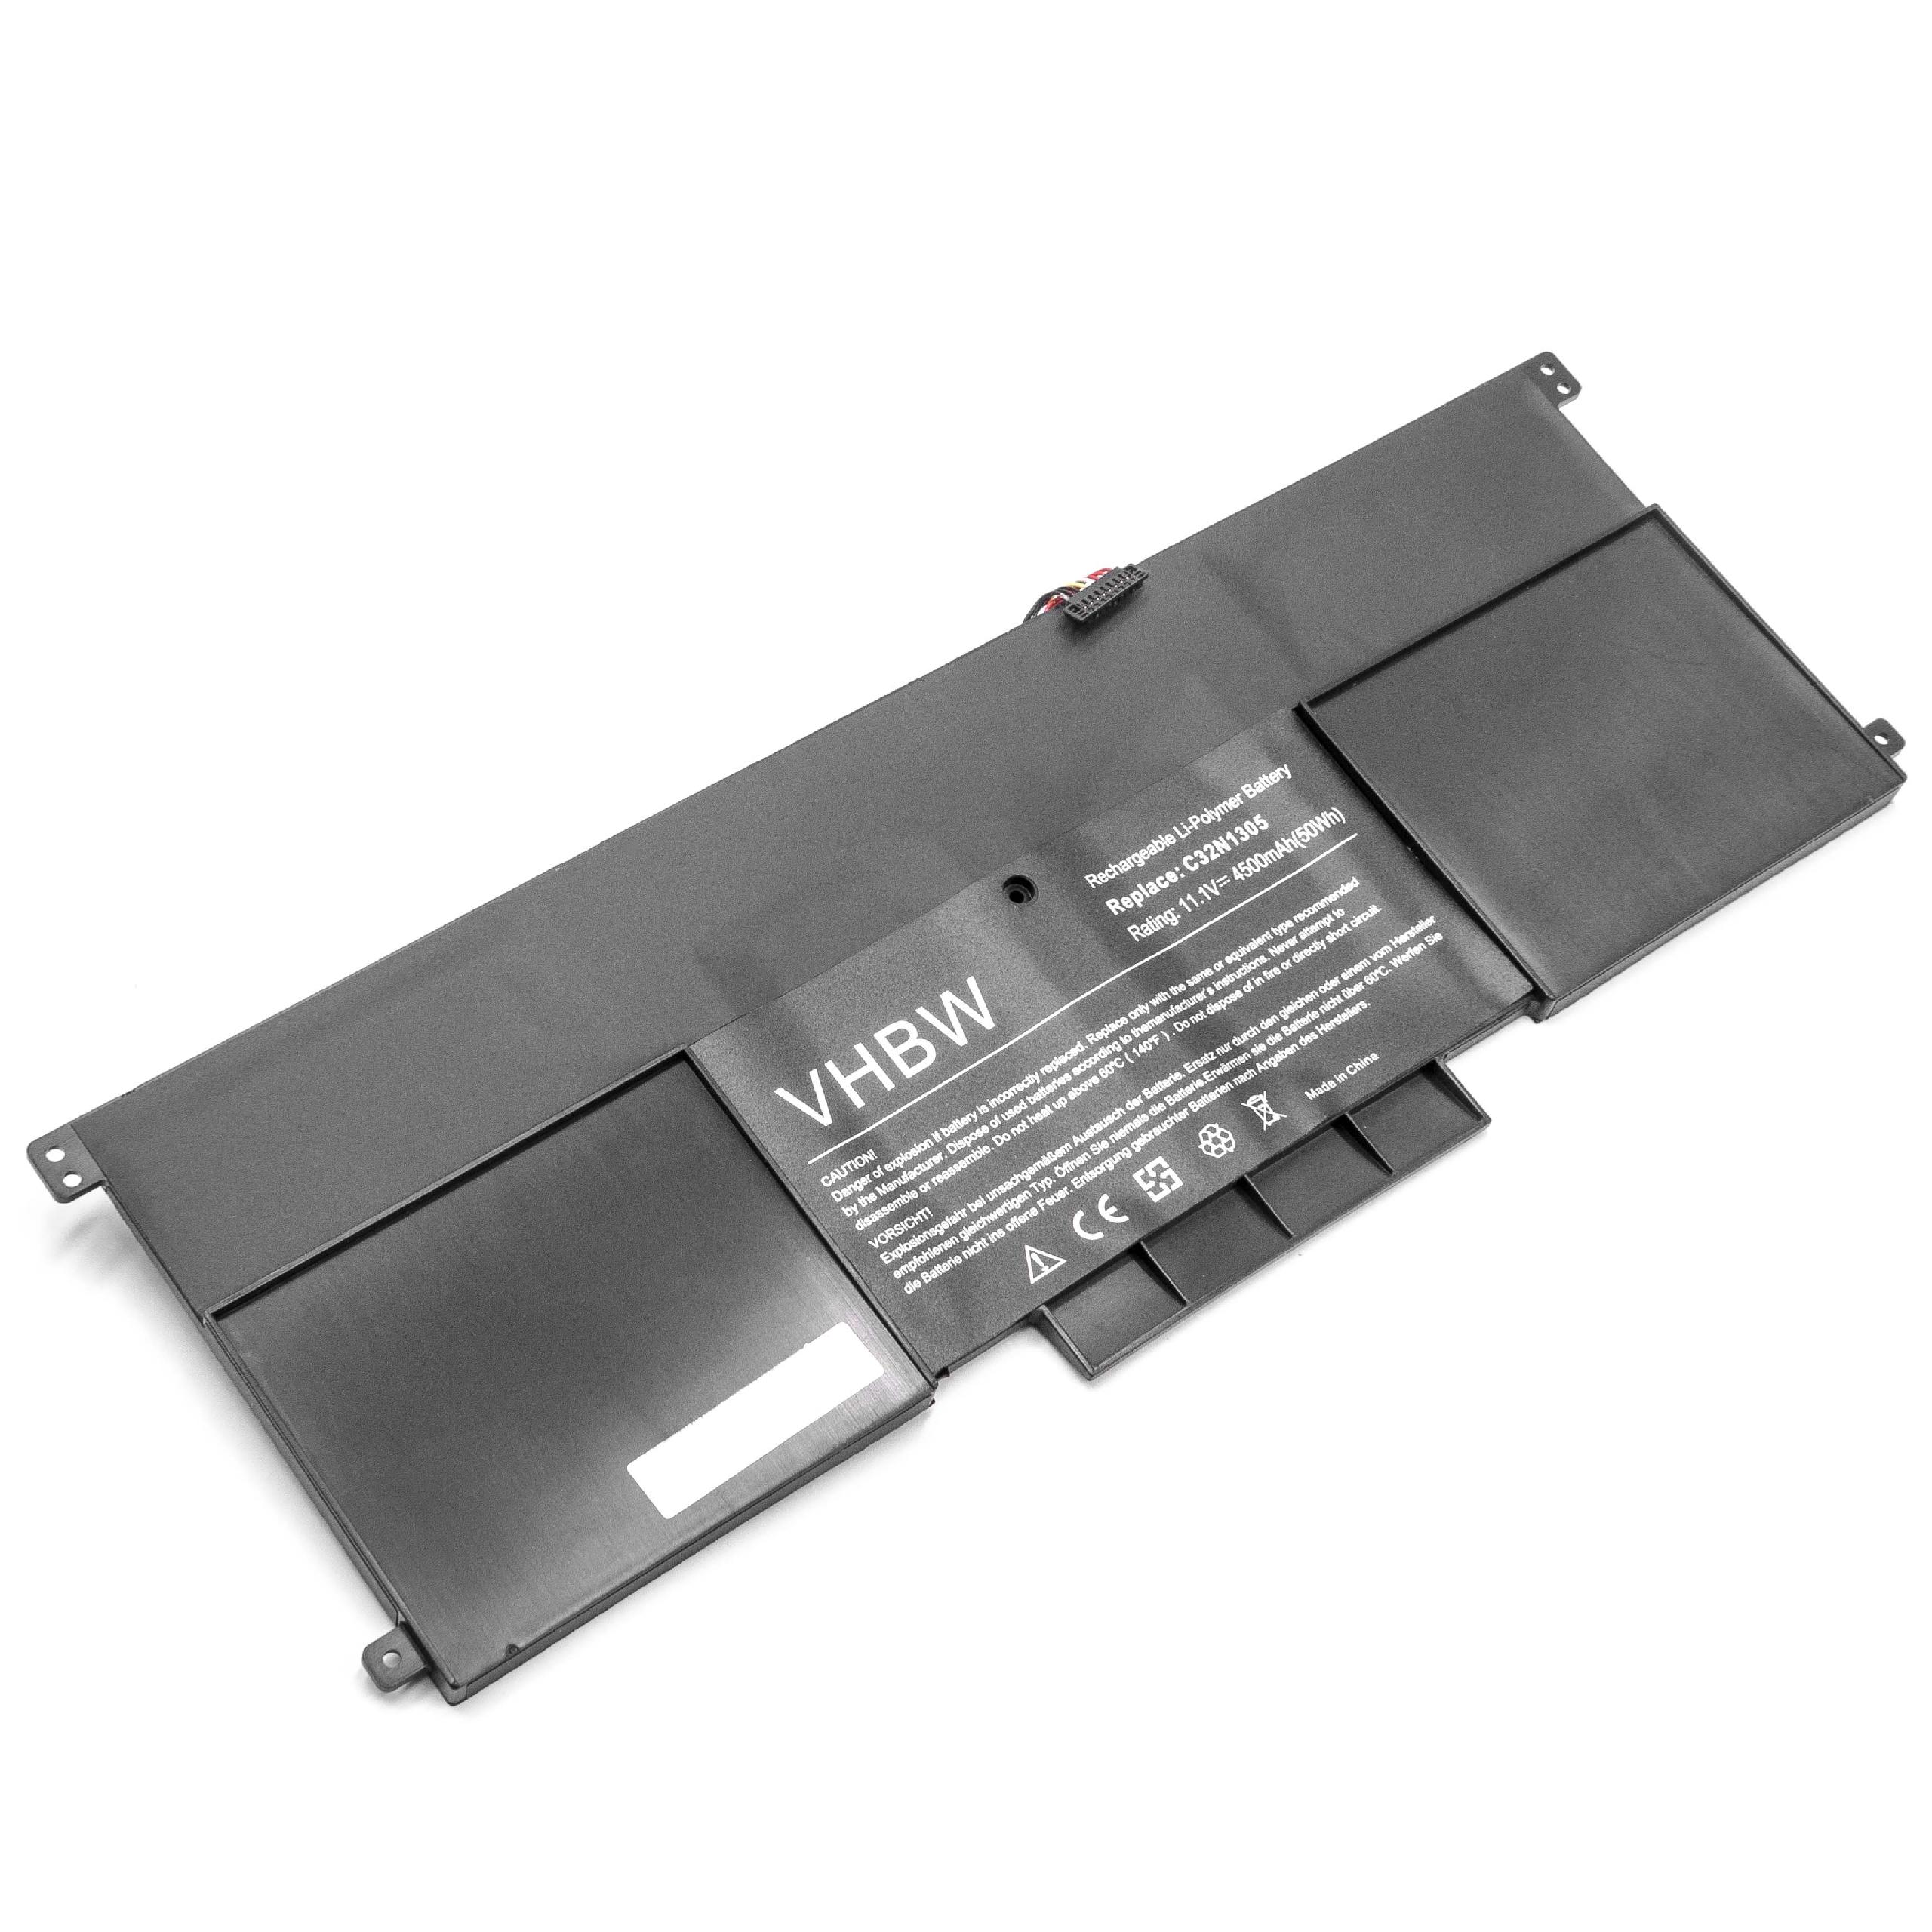 Batterie remplace Asus C32N1305, 0B200-00540000 pour ordinateur portable - 4500mAh 11,1V Li-polymère, noir